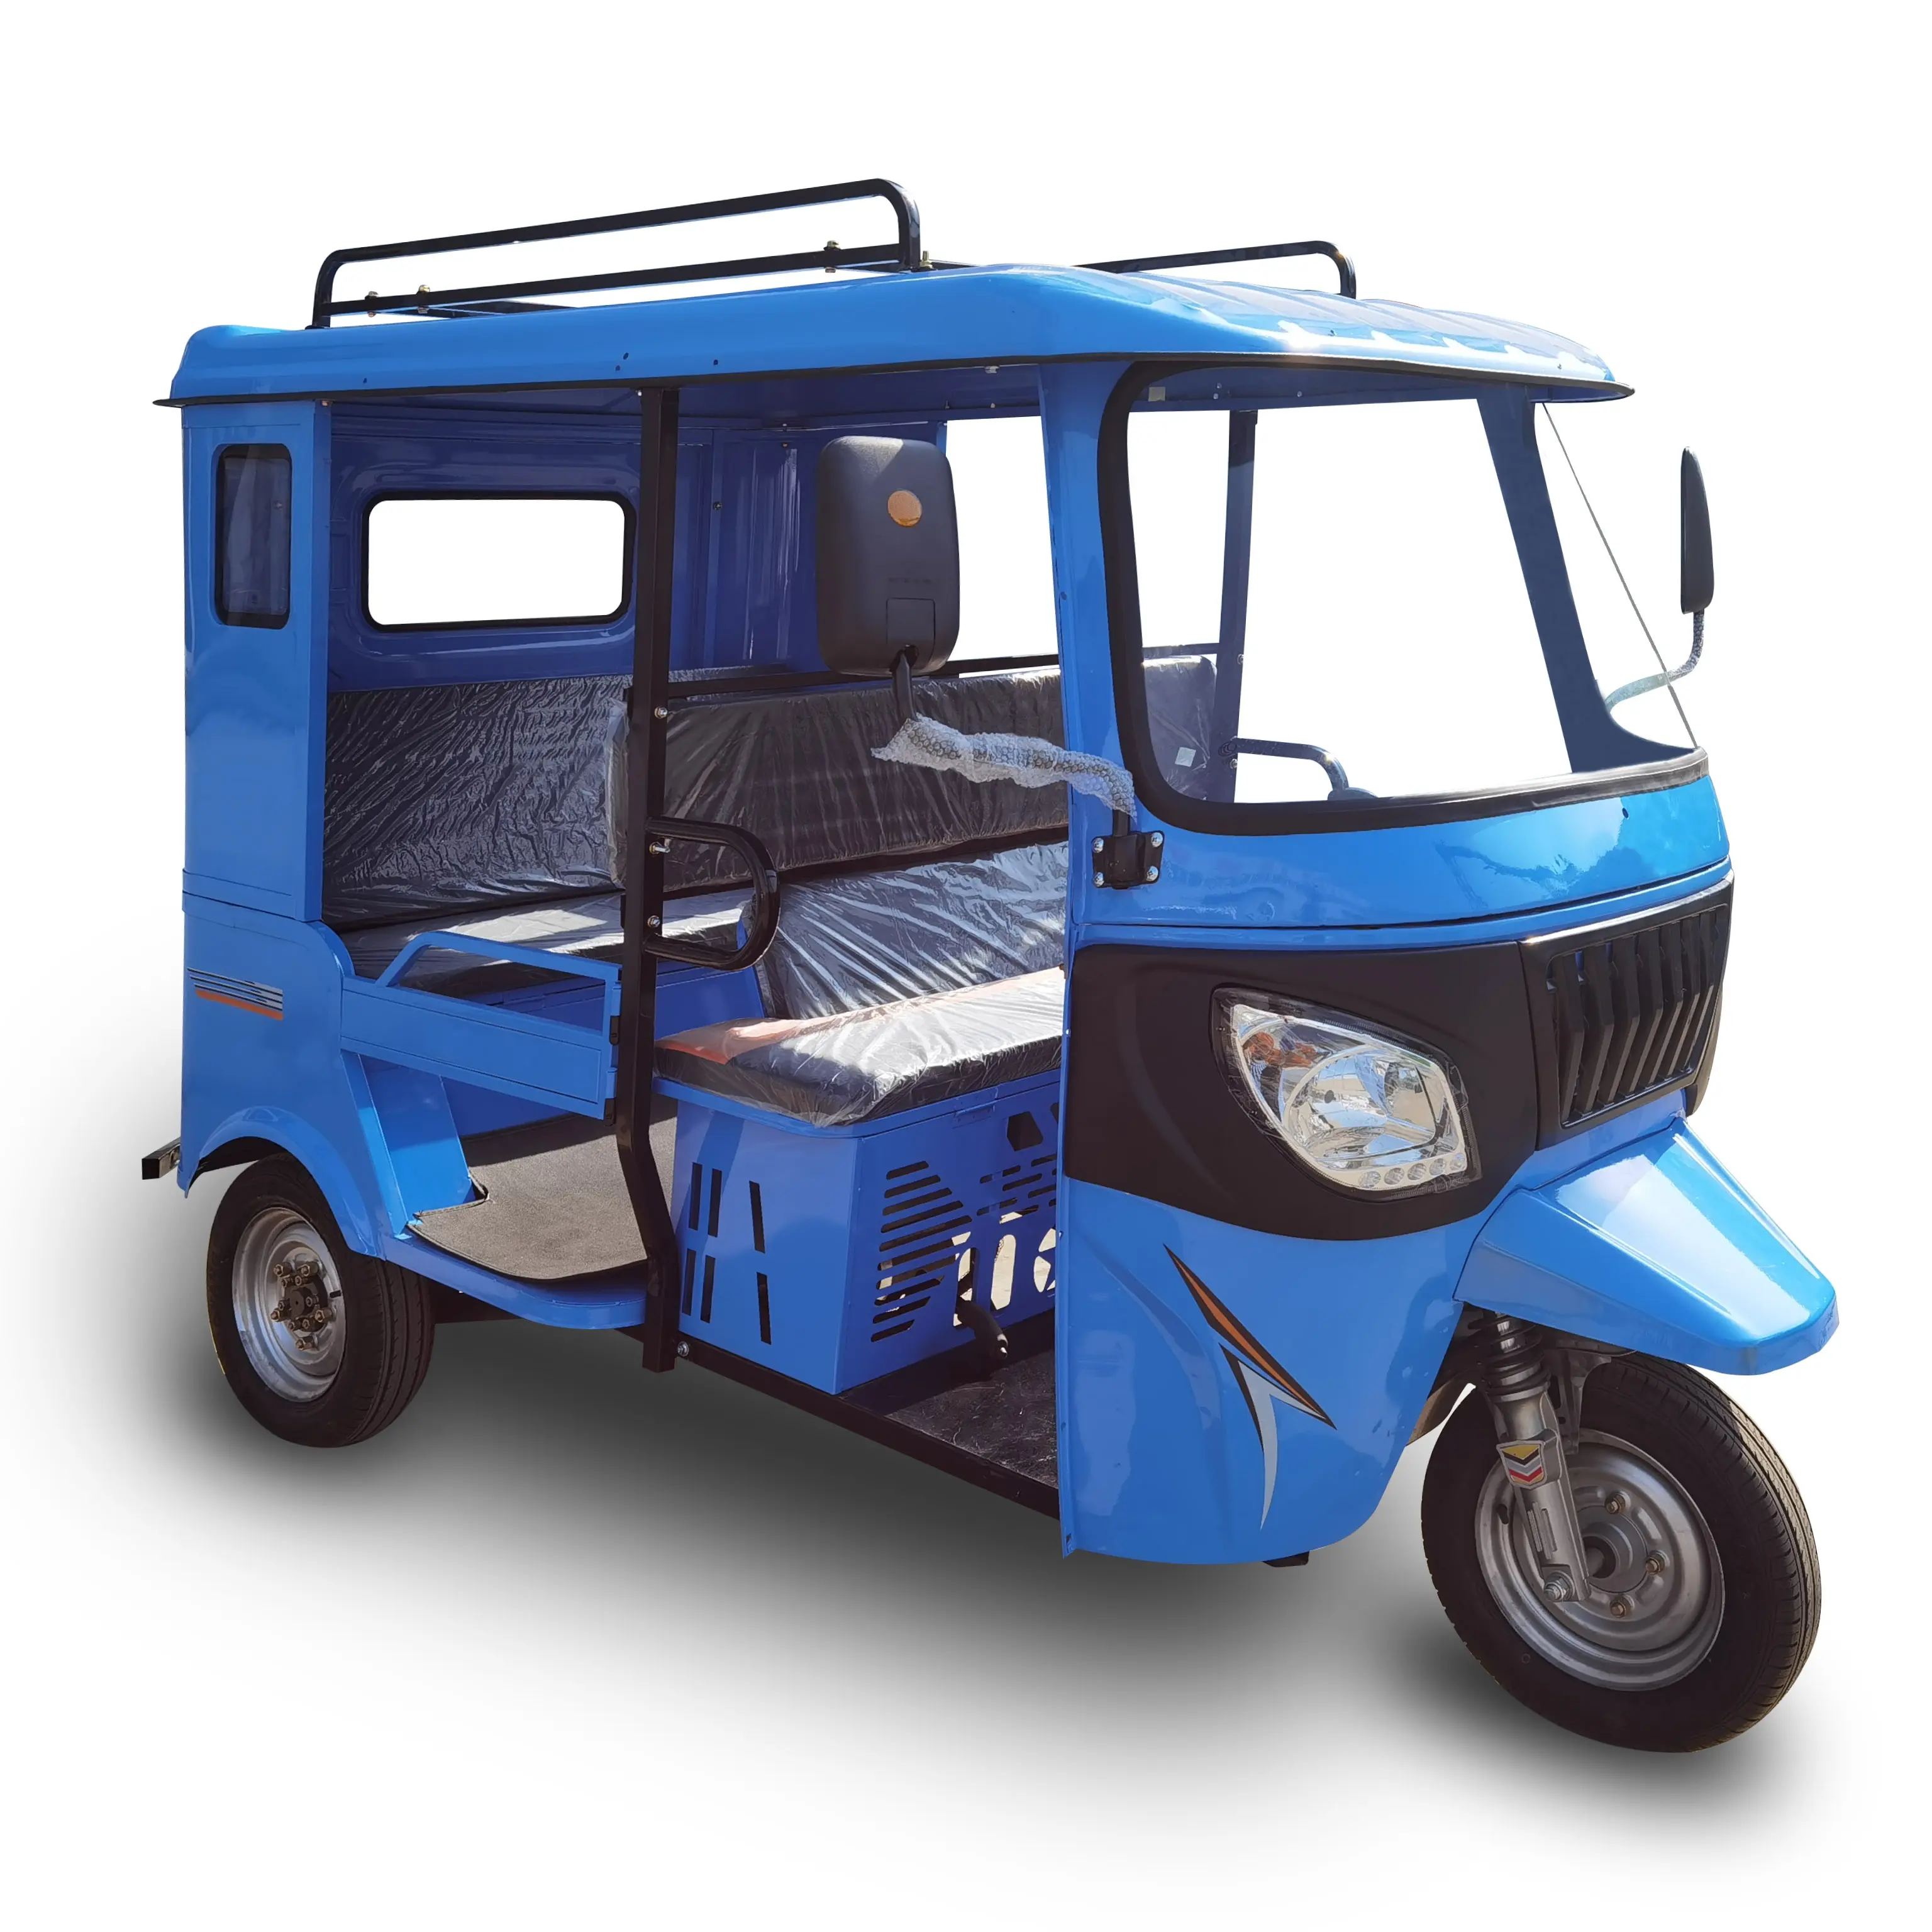 200CC Однорядный трехколесный мотоцикл для пассажиров Bajaj 3-колесный такси Tuktuk бензиновый трехколесный мотоцикл